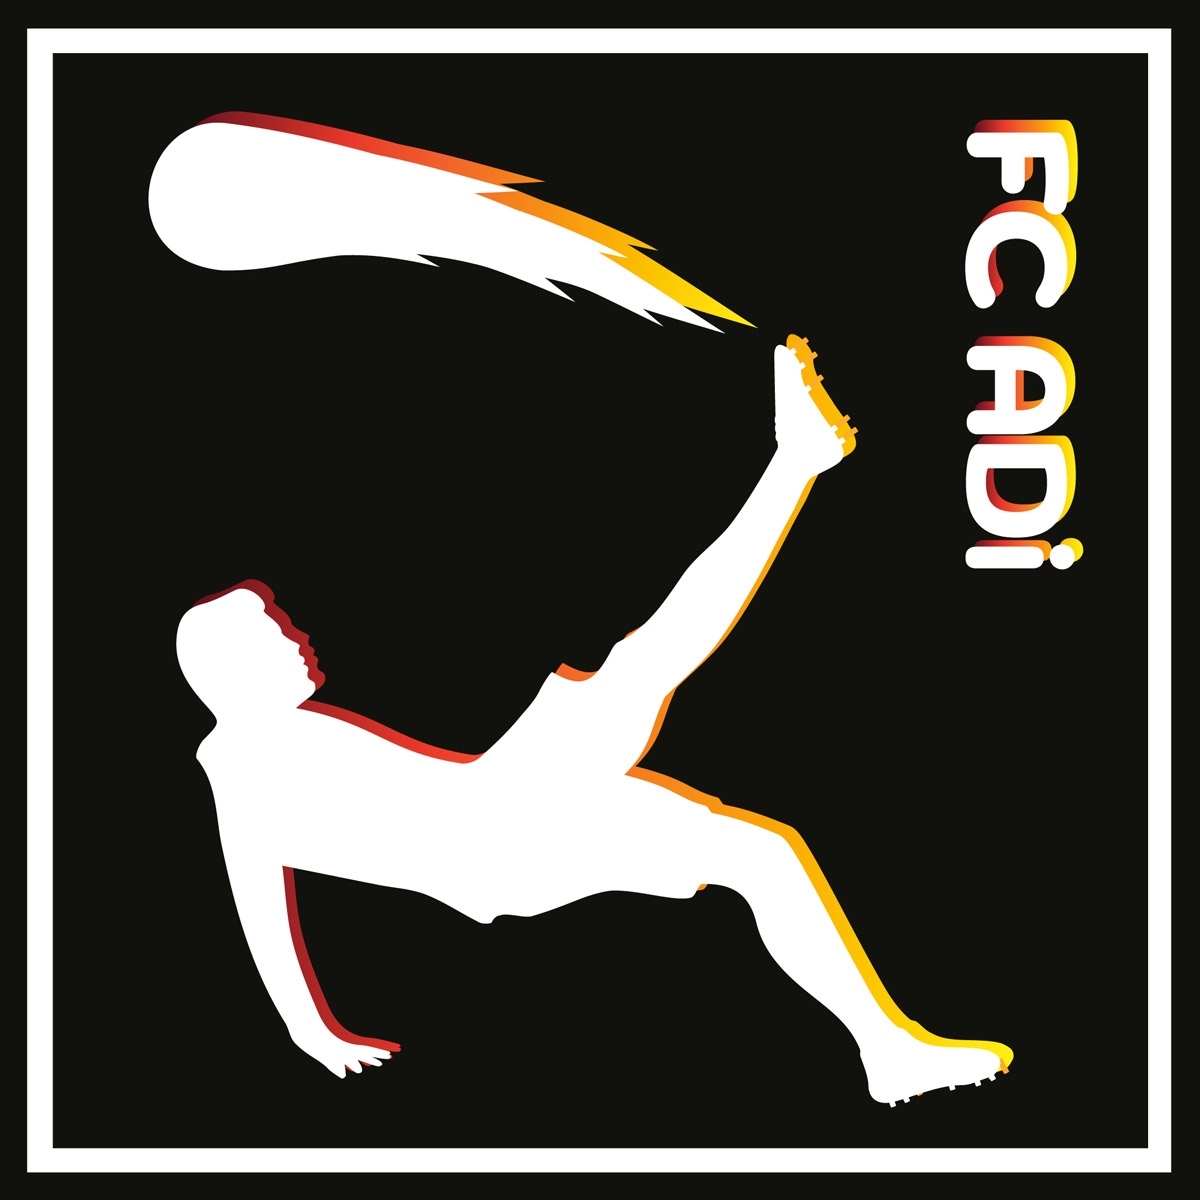 adiag-schnupperlehre-floyd-logo.jpg